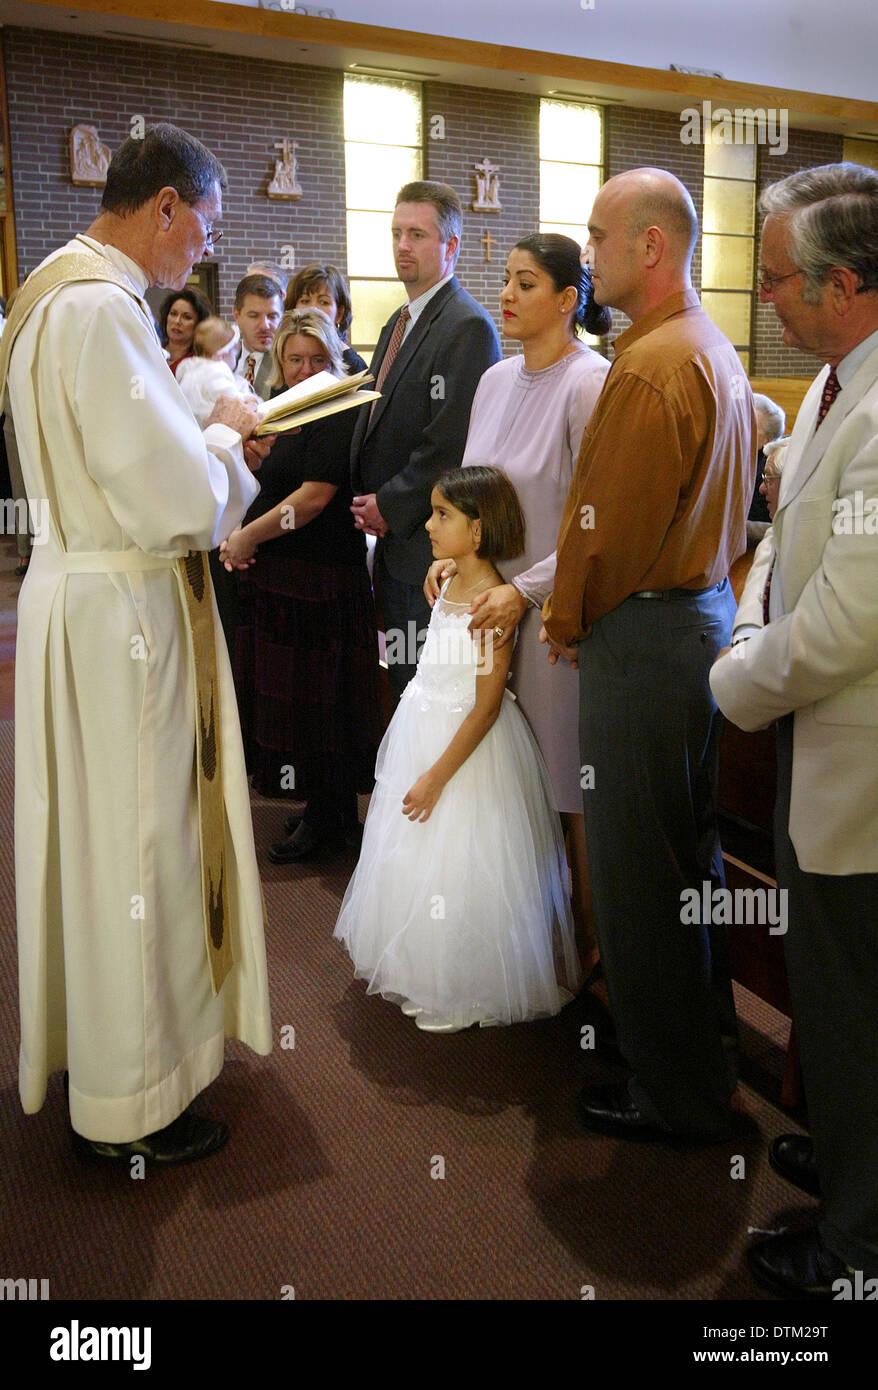 Un prêtre catholique robe lit un sermon pour les parents et les enfants au cours des cérémonies de baptême dans une église de Irvine, CA. Banque D'Images